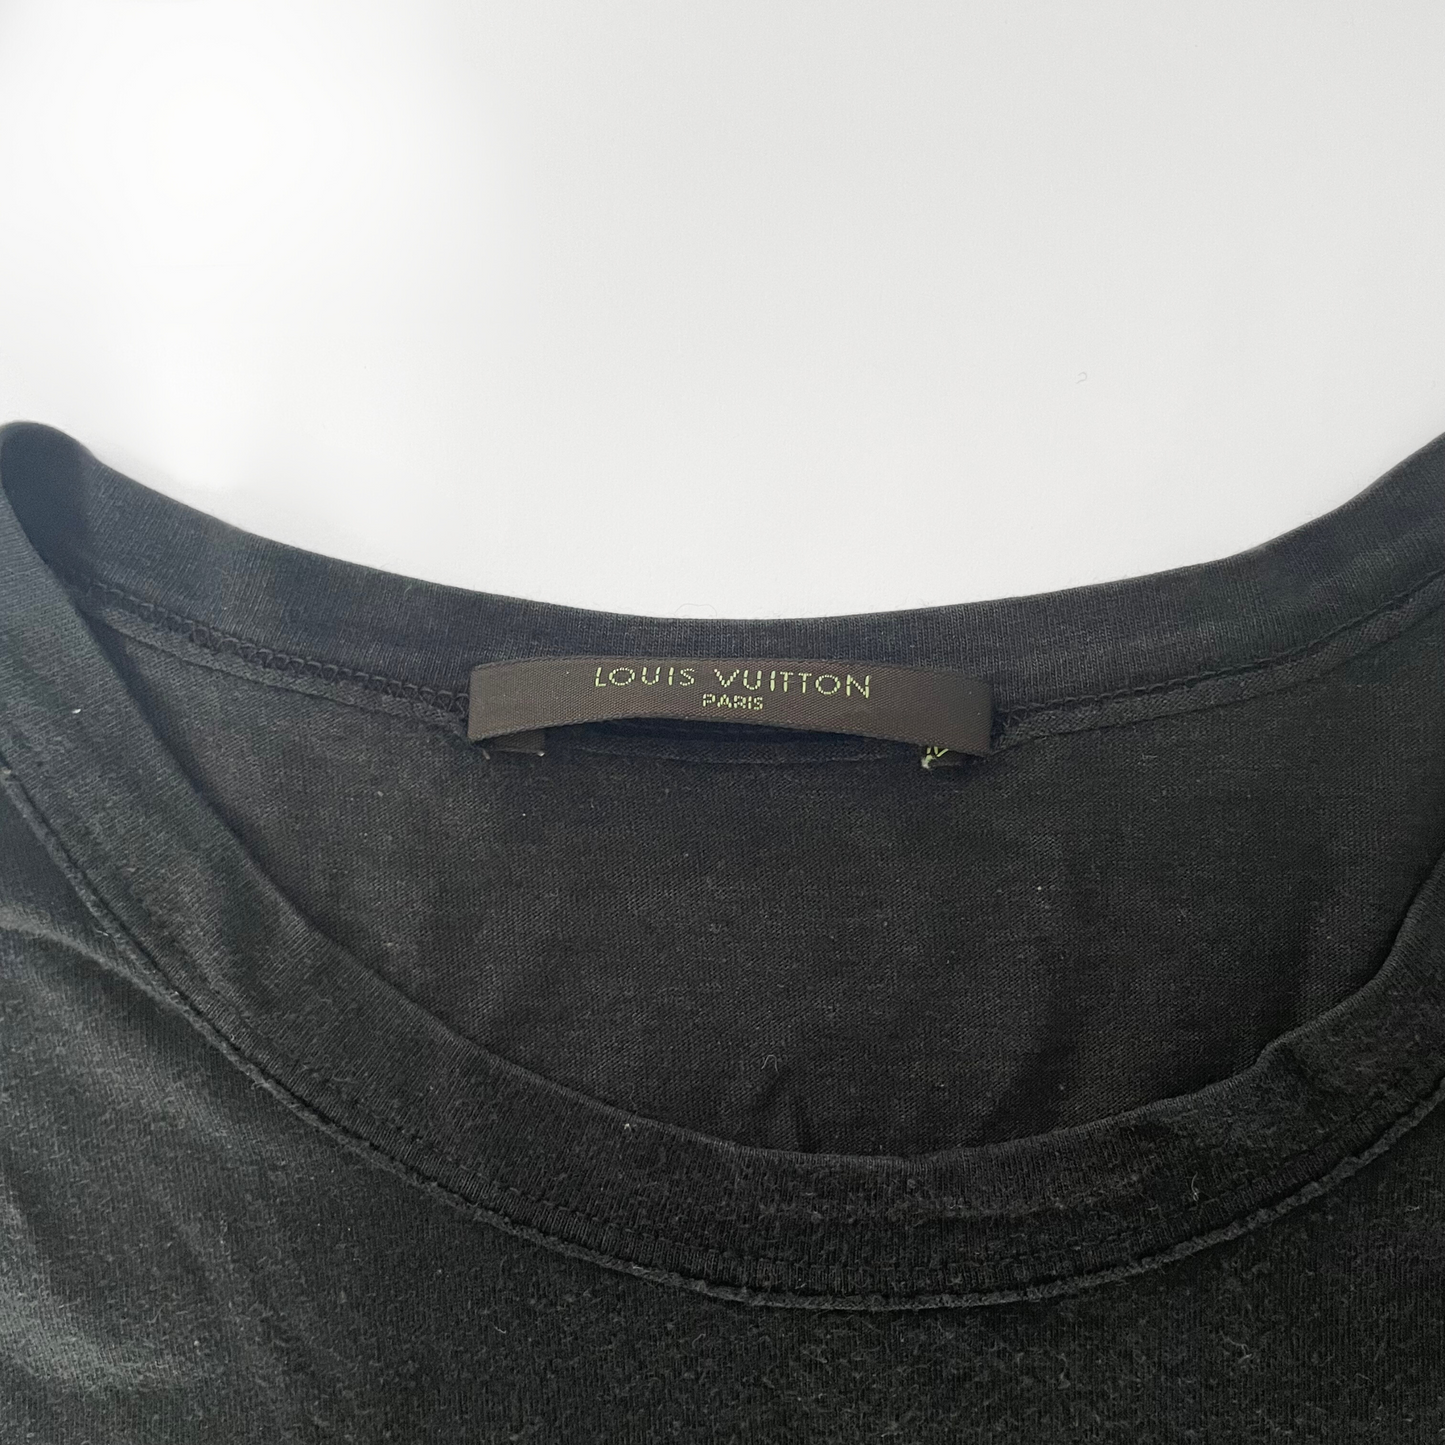 Louis Vuitton Louis Vuitton T-shirt Cotone Modal Mix - Abbigliamento - Etoile Luxury Vintage